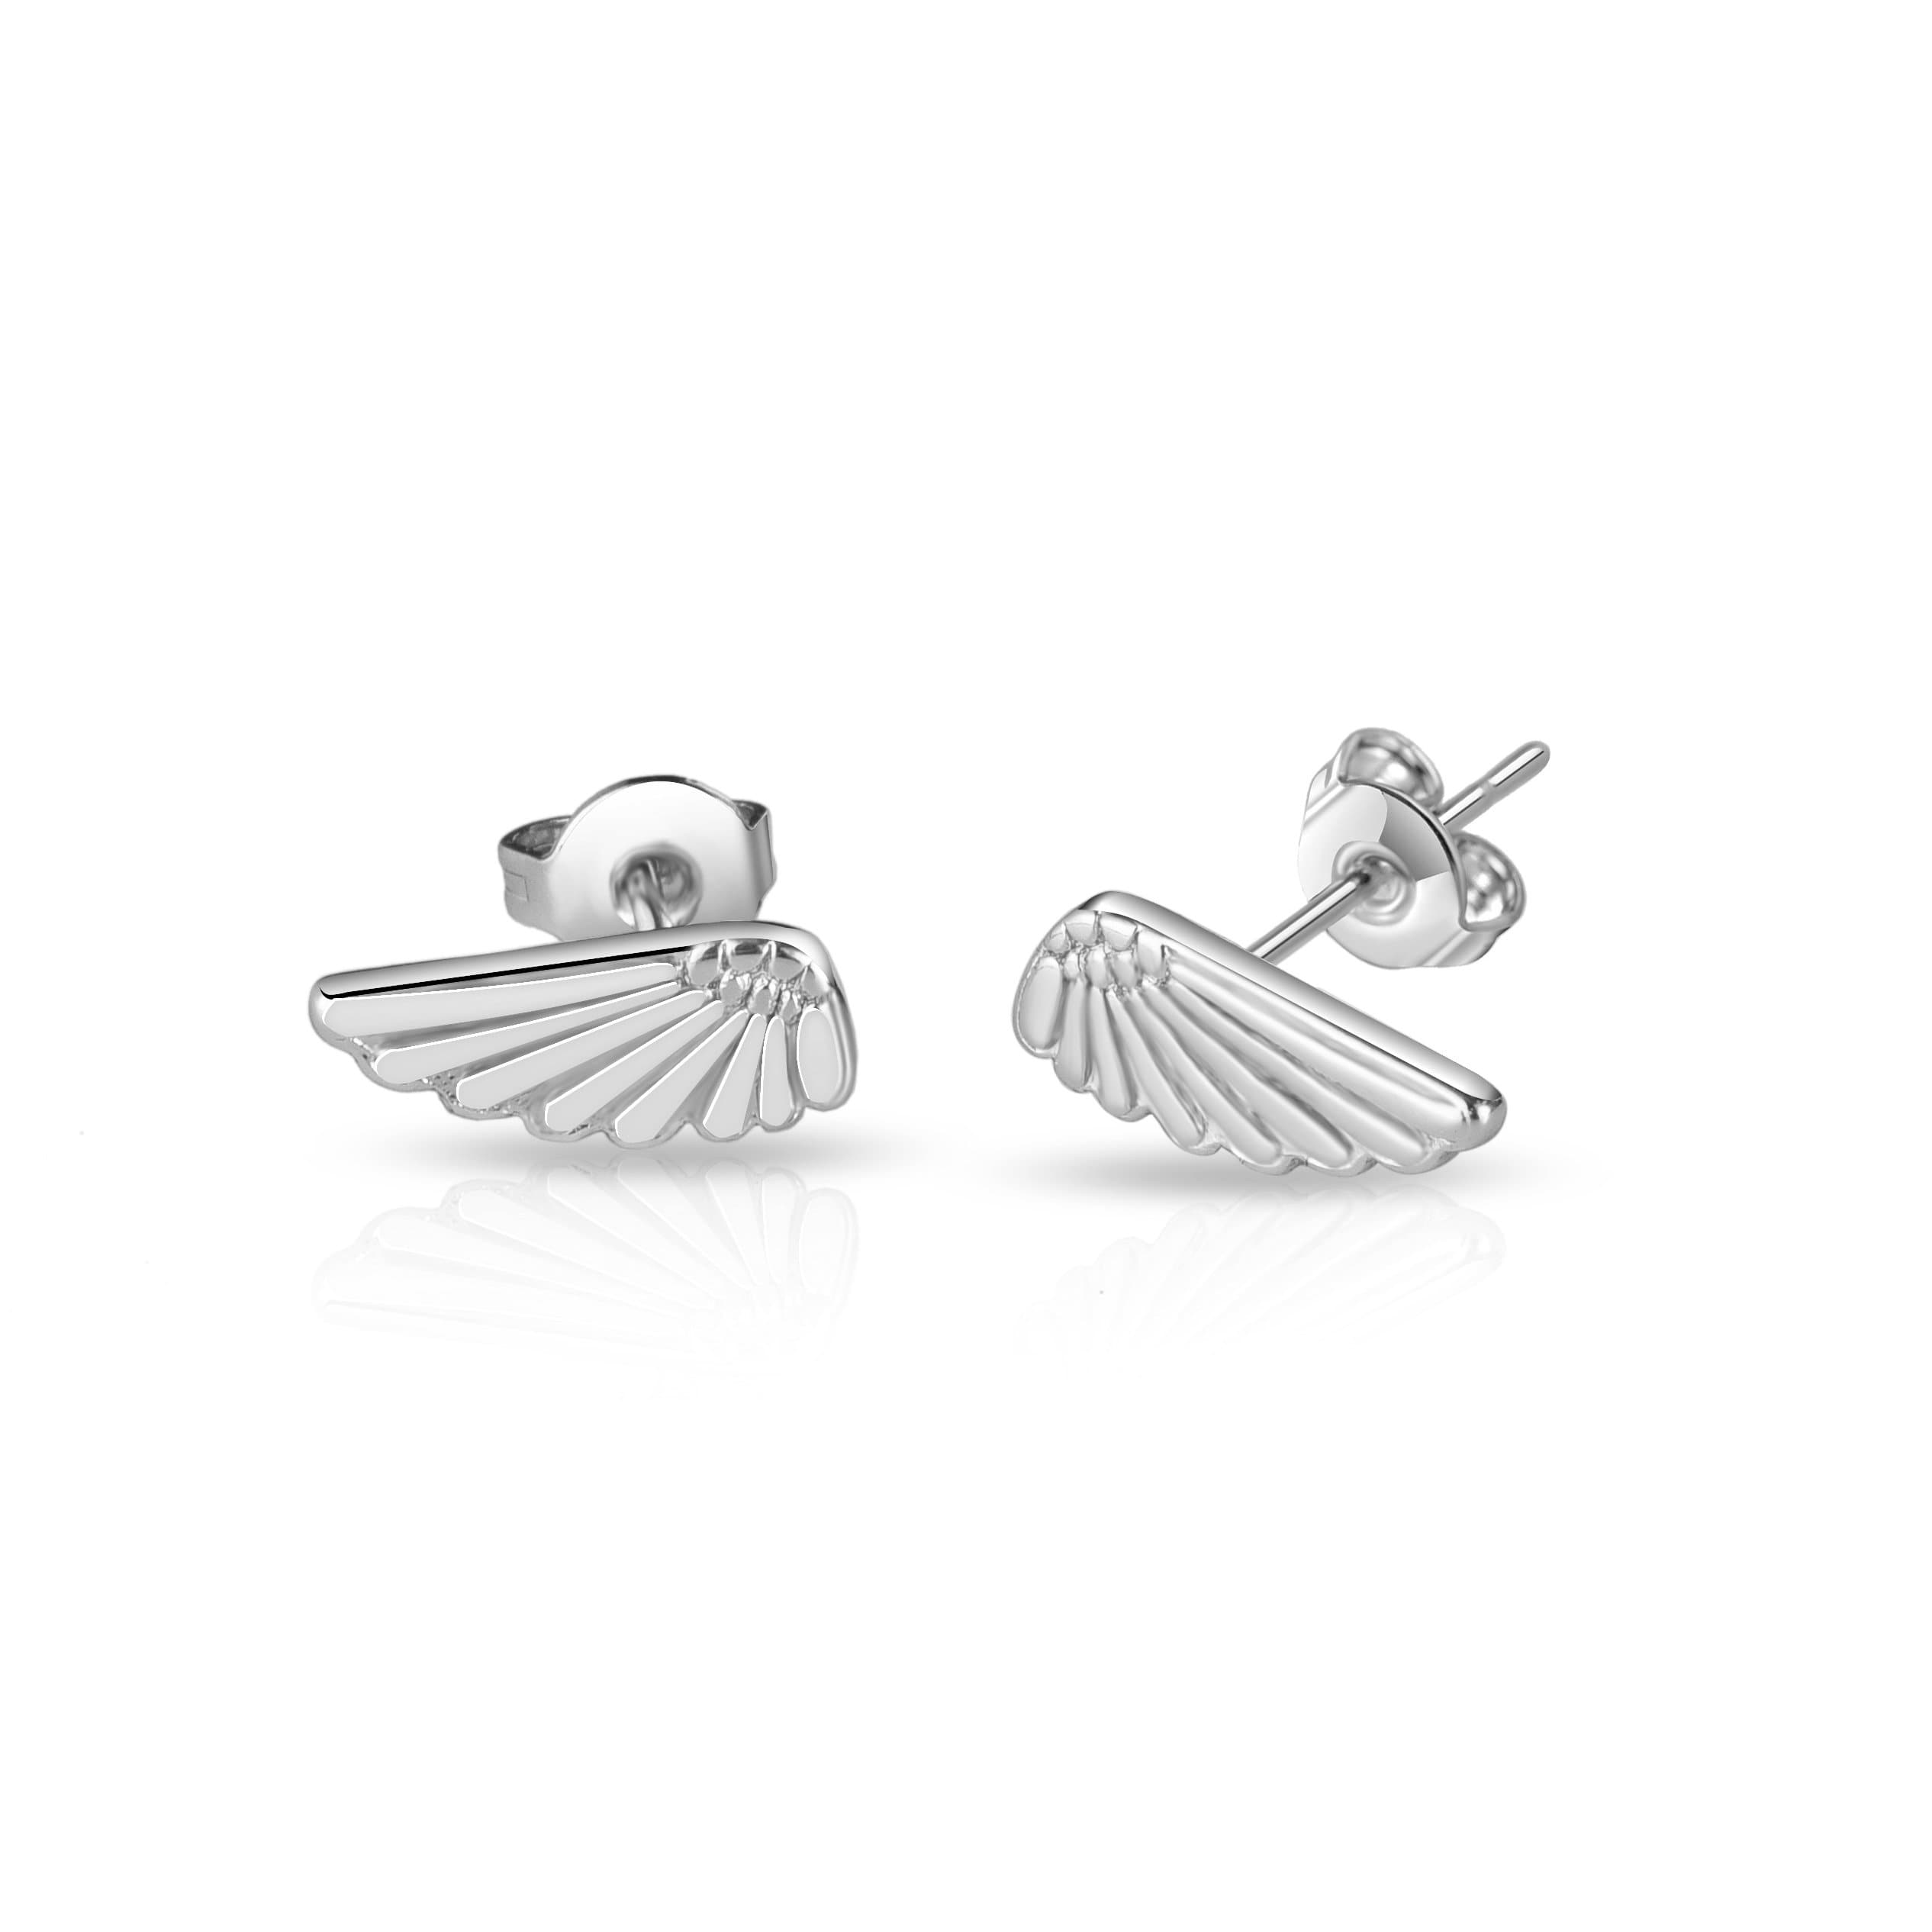 Silver Plated Angel Wing Earrings by Philip Jones Jewellery